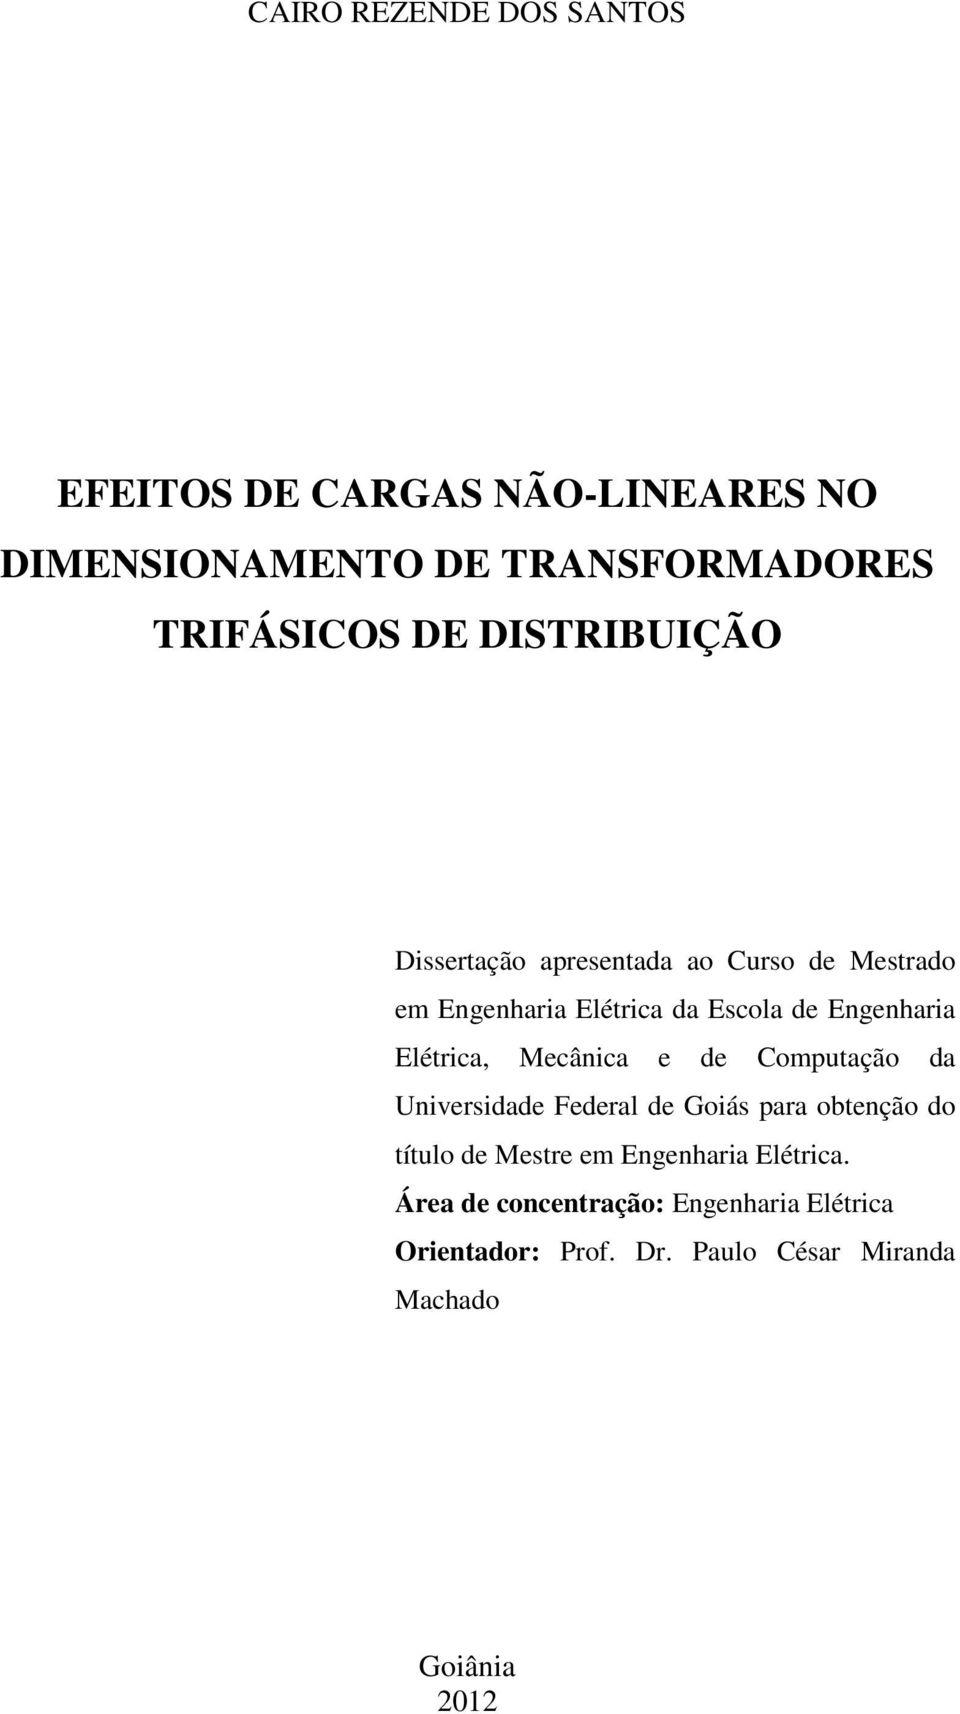 Elétrica, Mecânica e de Computação da Universidade Federal de Goiás para obtenção do título de Mestre em